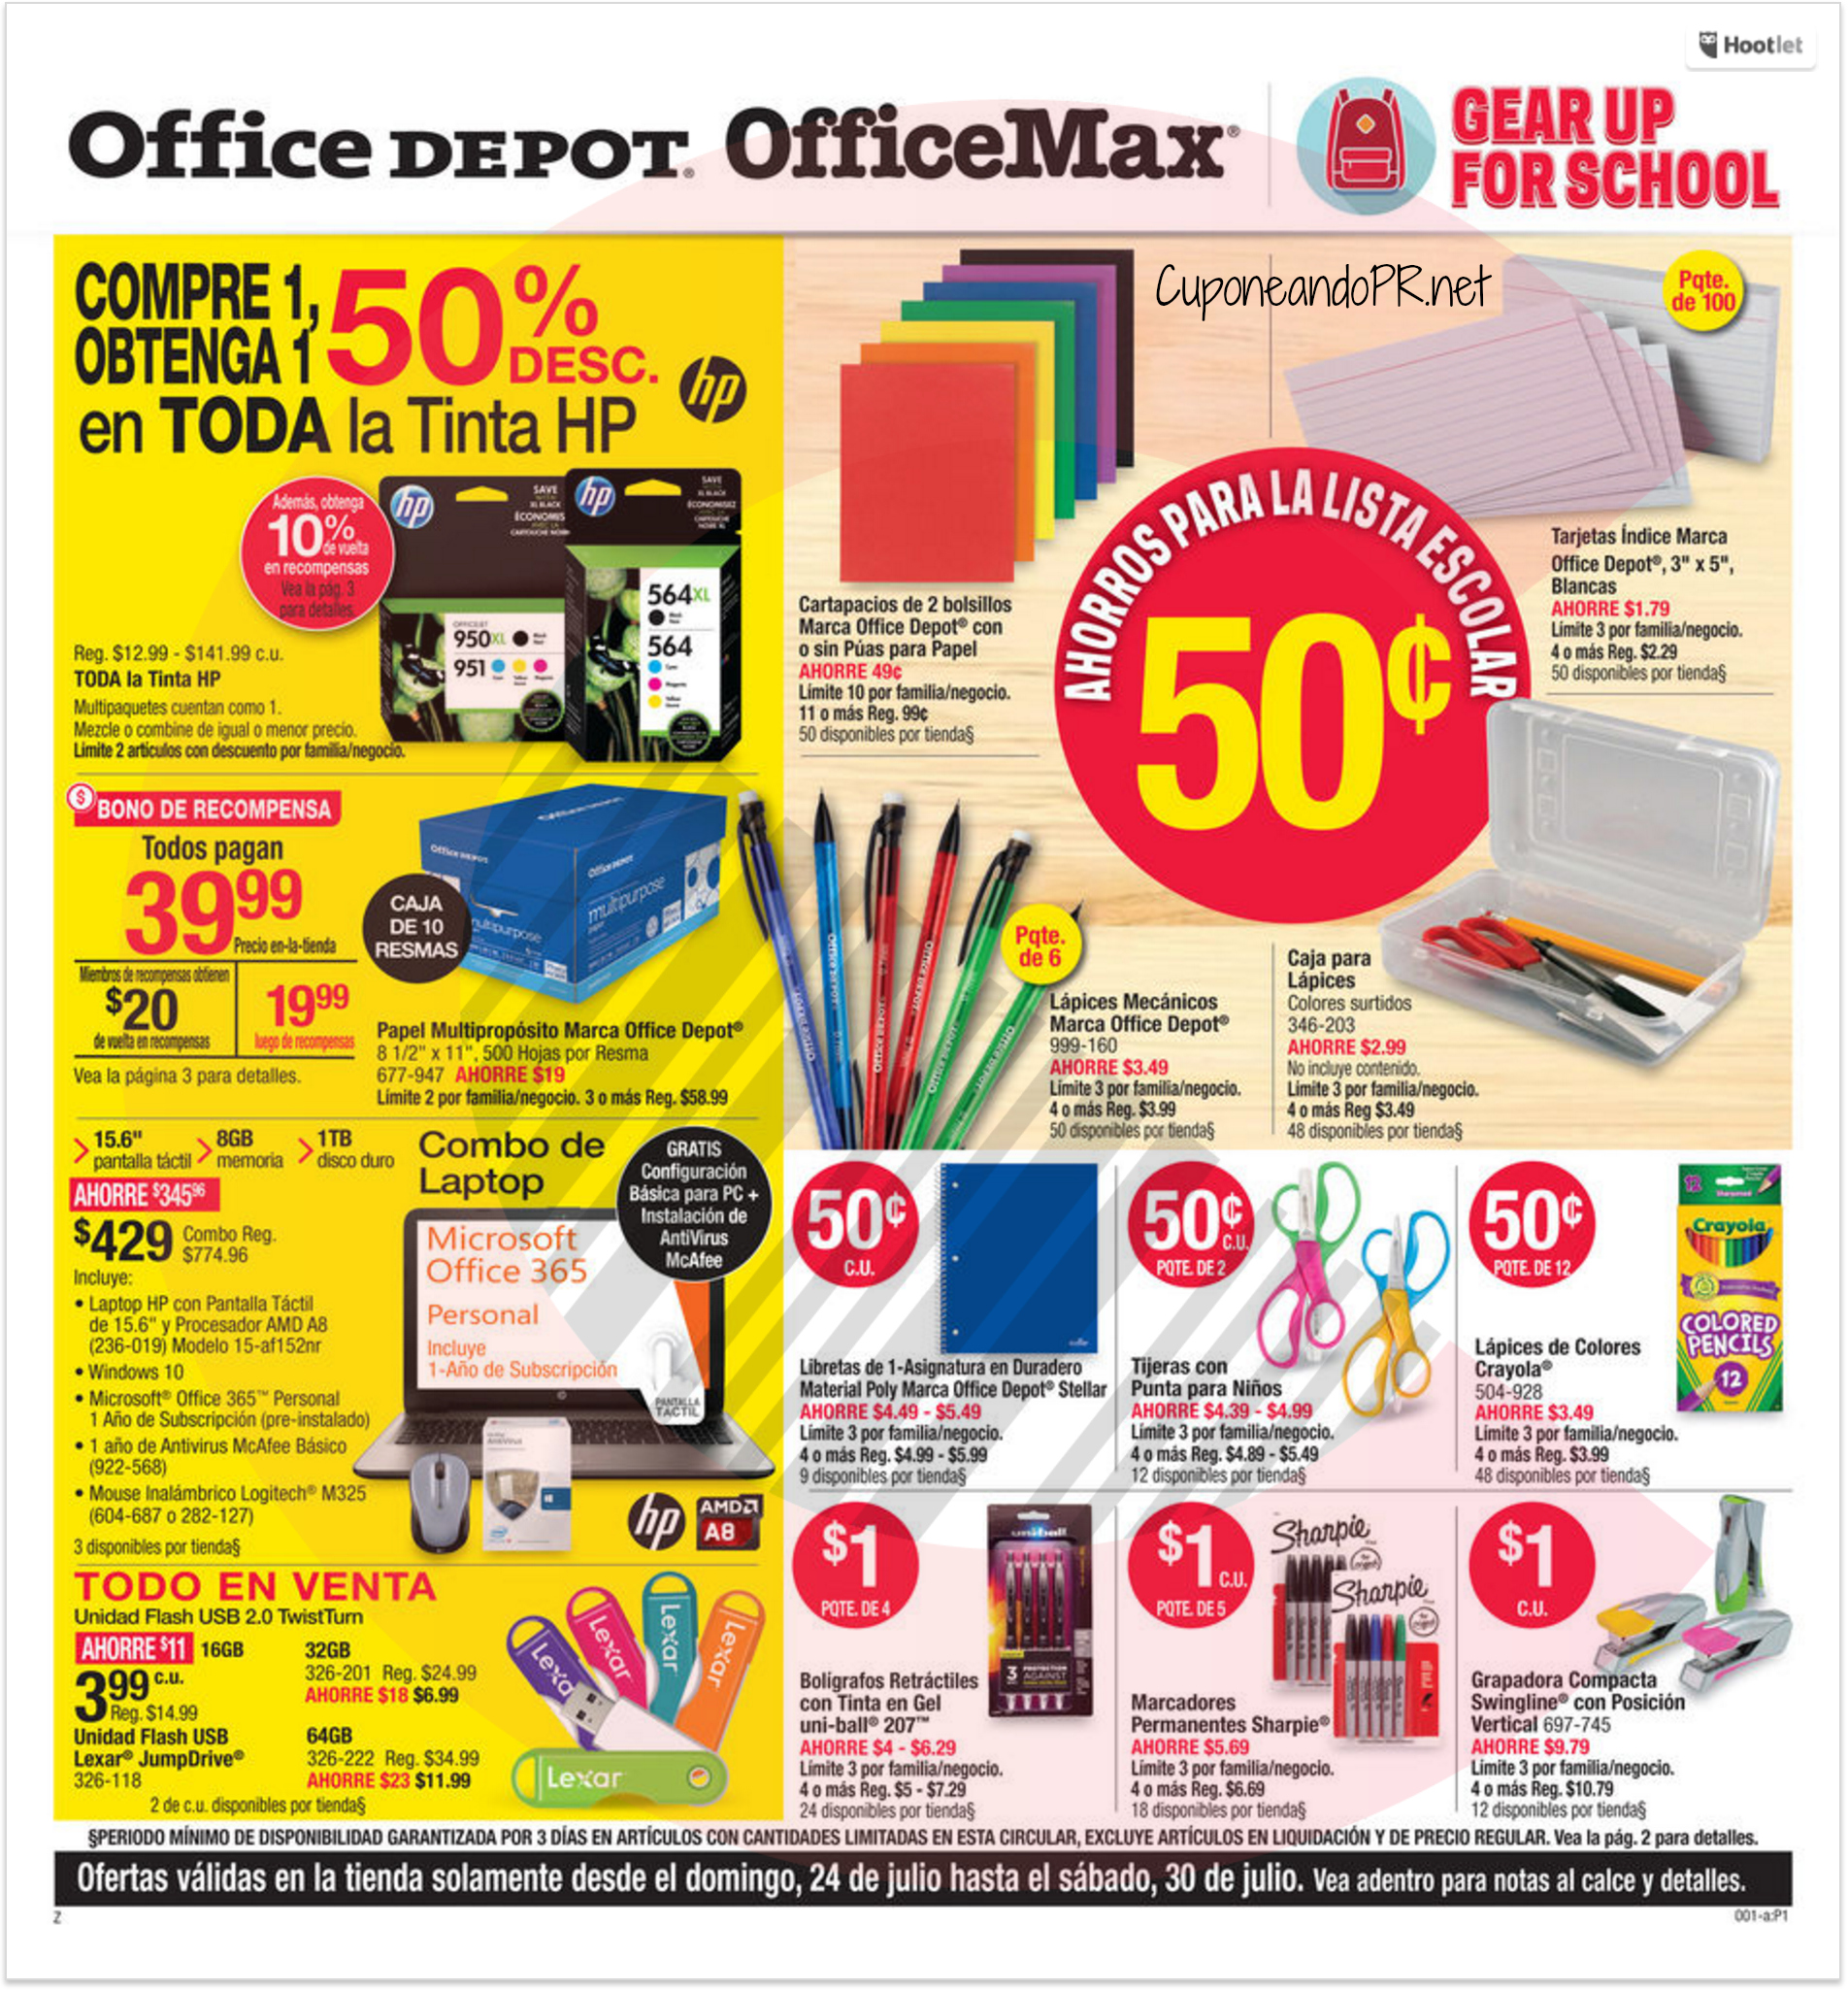 Shopper OfficeMax Office Depot